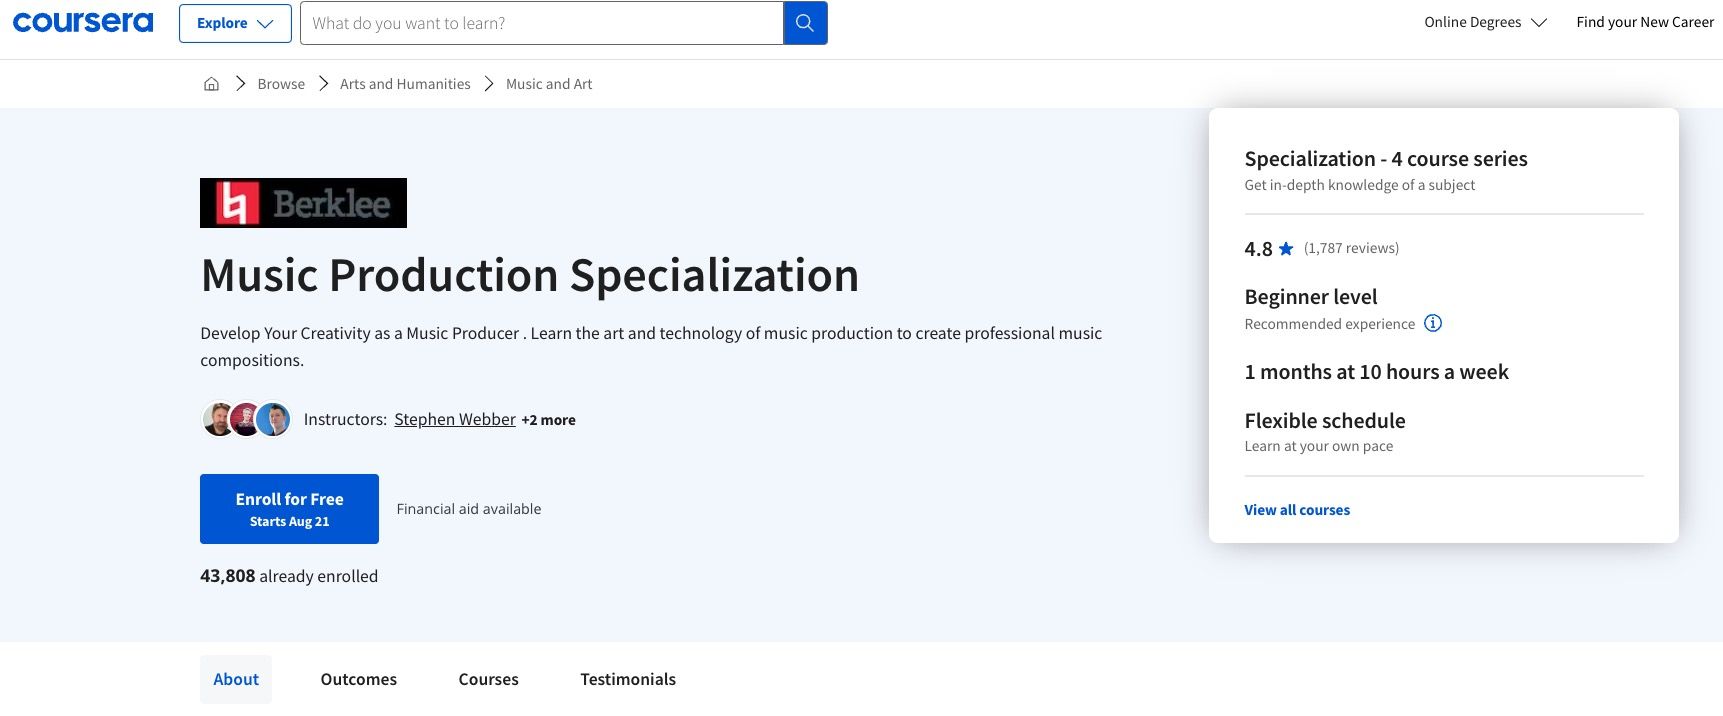 Captura de tela do curso Coursera sobre produção musical